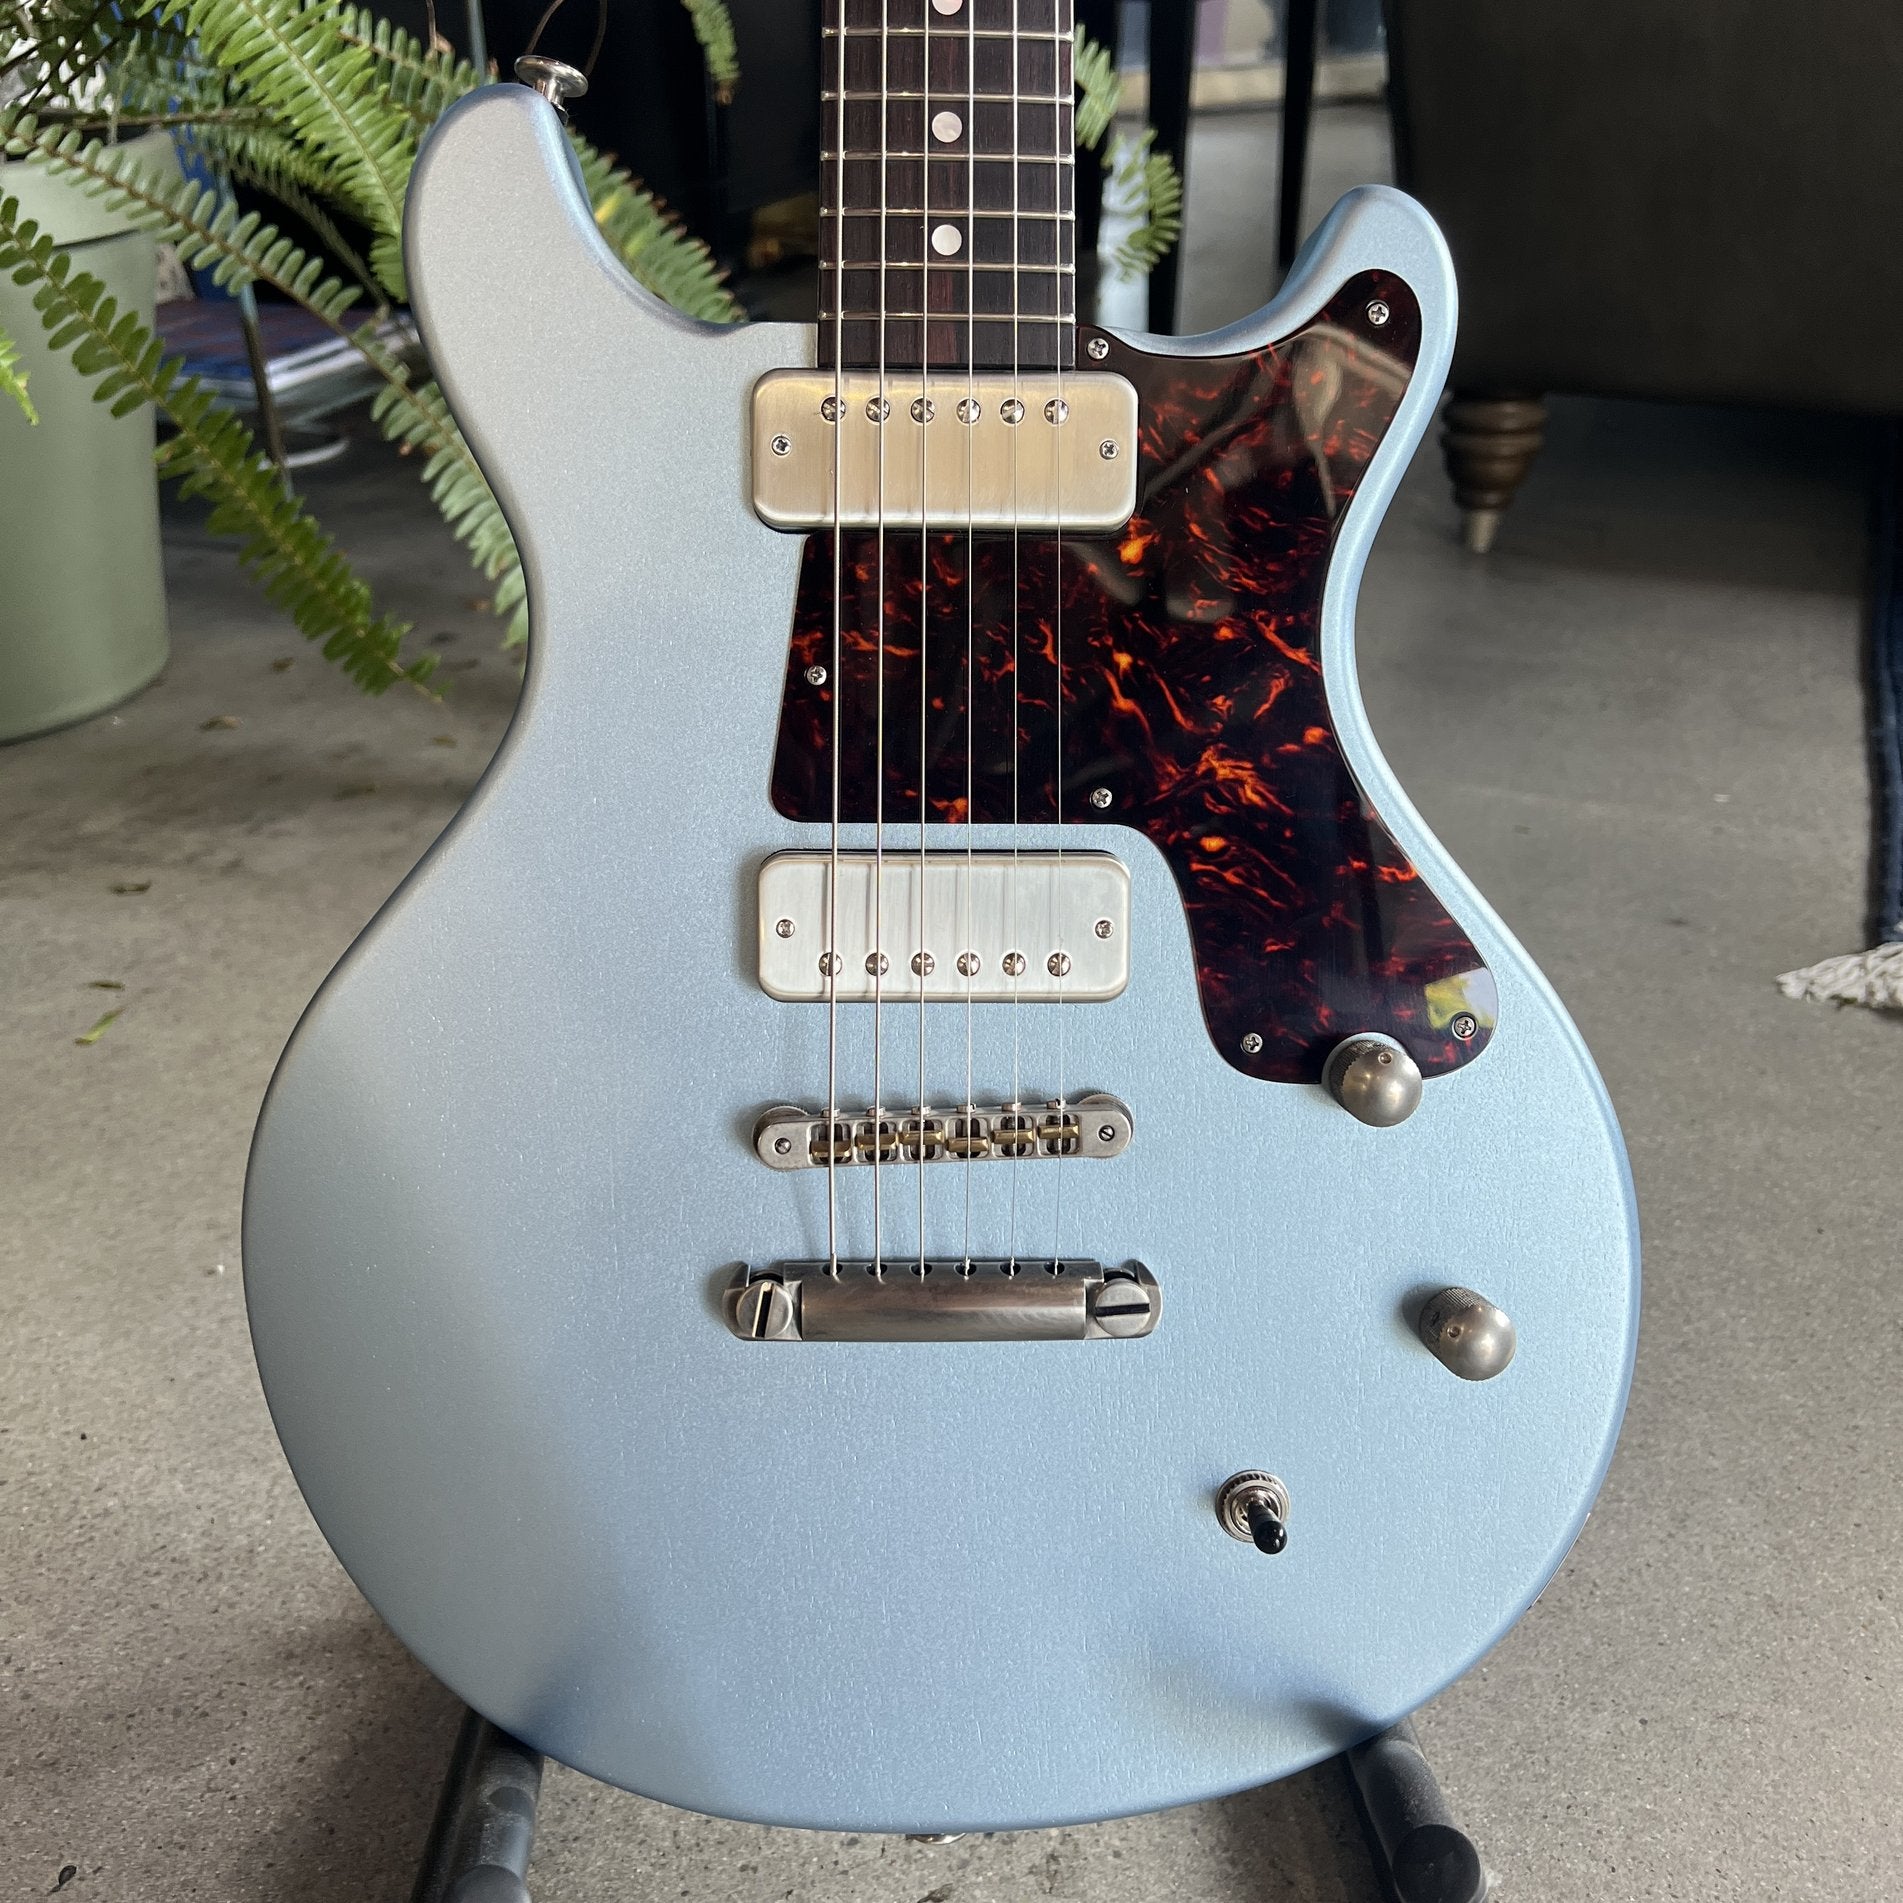 Deimel Guitarworks Doublestar #042 in Moon Dust Blue